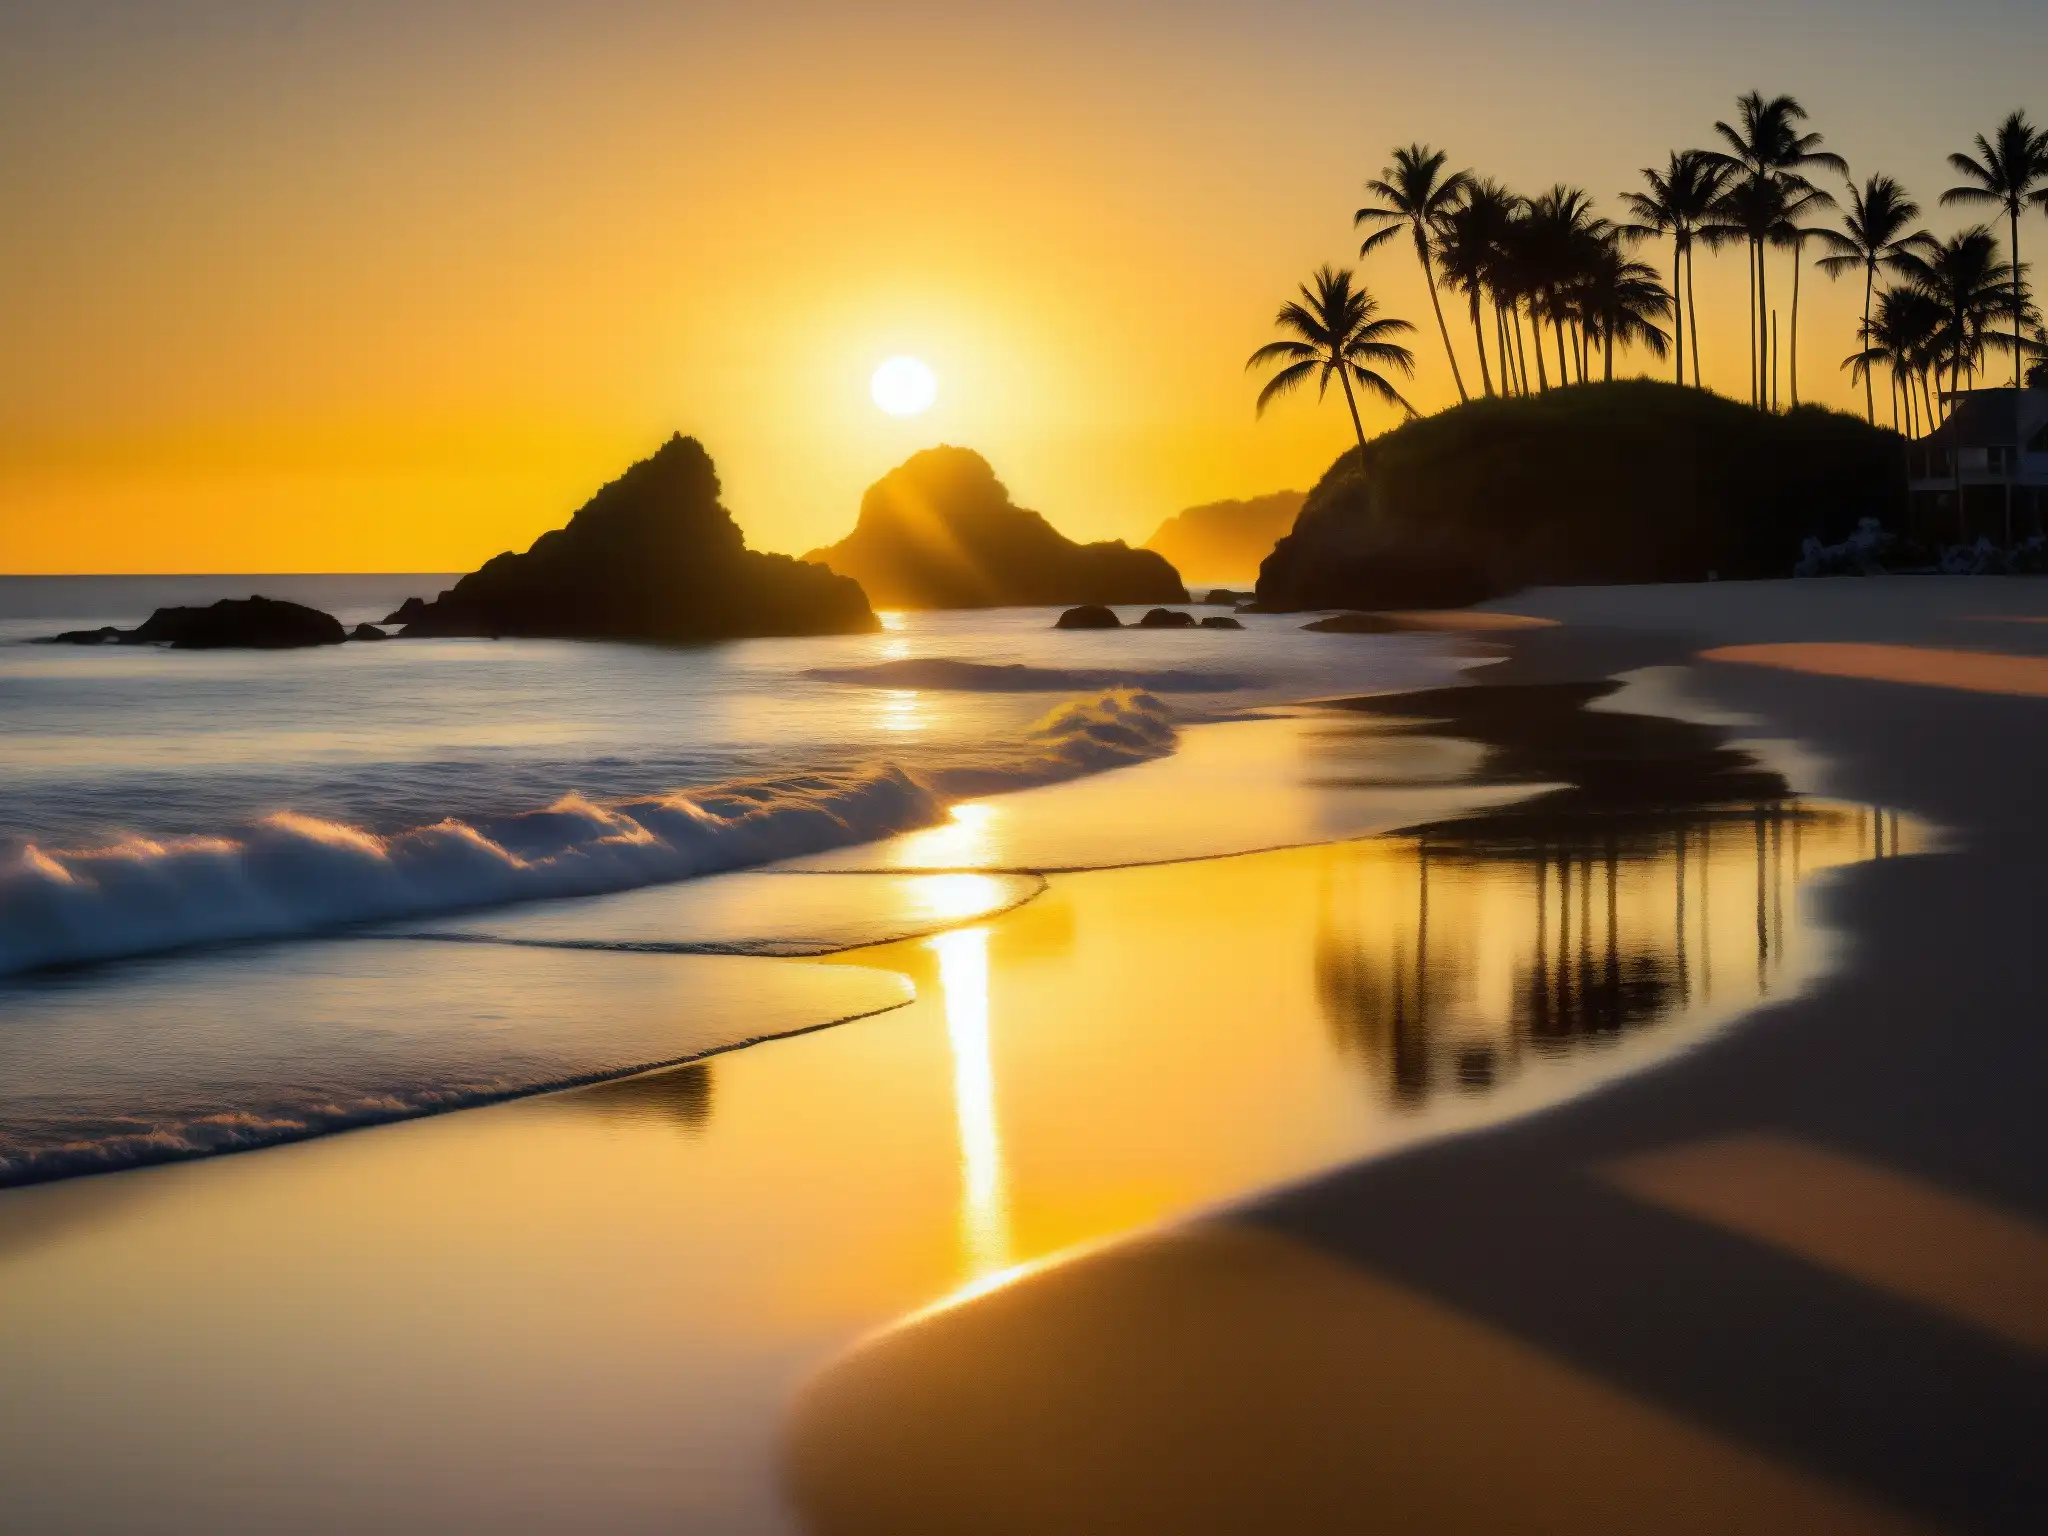 Una impresionante fotografía detallada de Dumas Beach al atardecer, con el sol dorado poniéndose en el horizonte y creando un cálido resplandor sobre las olas